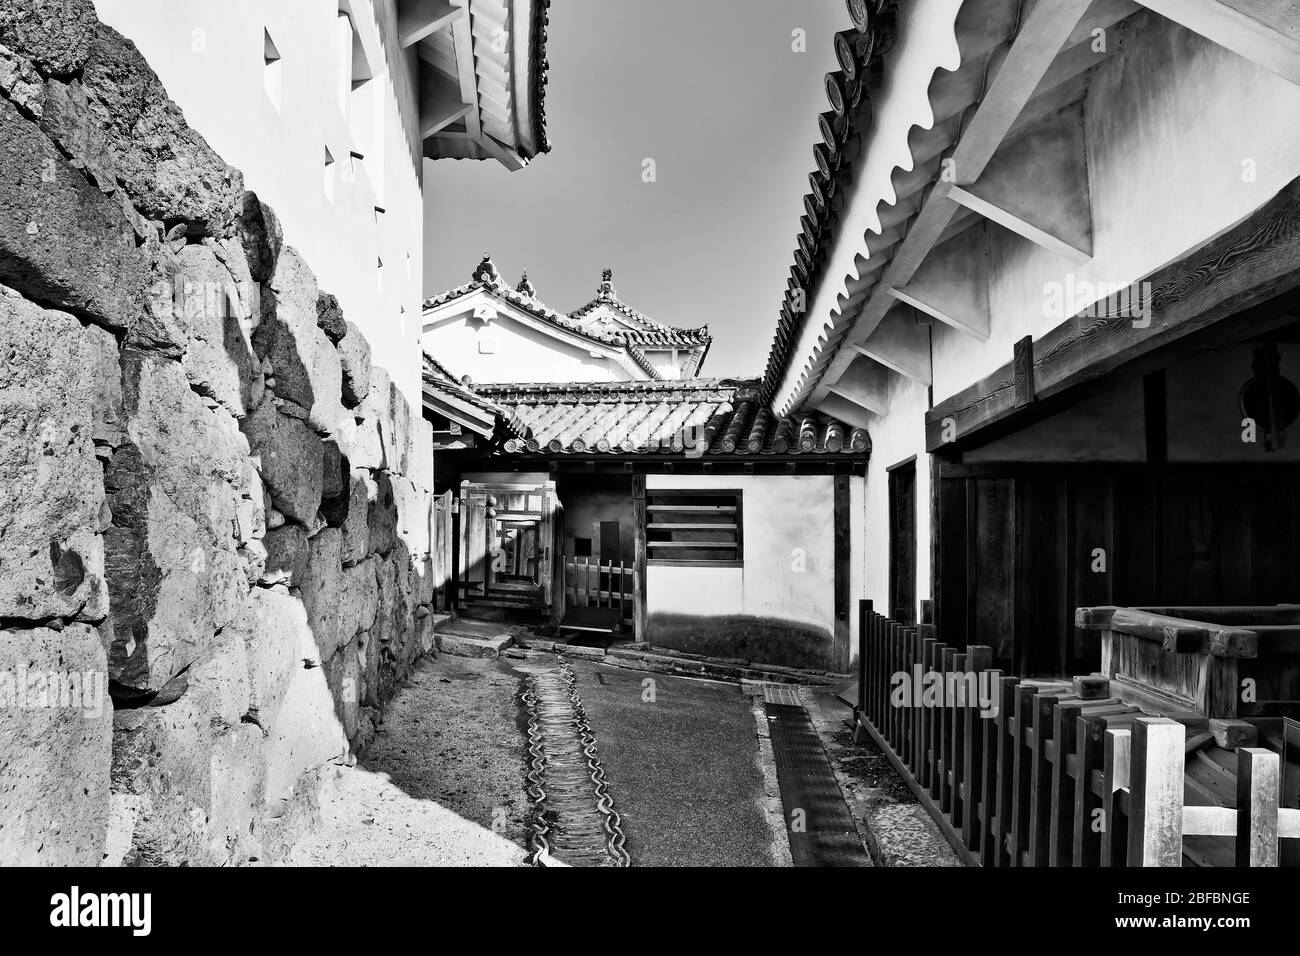 Ancien château noir-blanc au Japon près d'Osaka - Himeji. Bâtiments historiques sur des murs en pierre avec des tours blanches. Banque D'Images